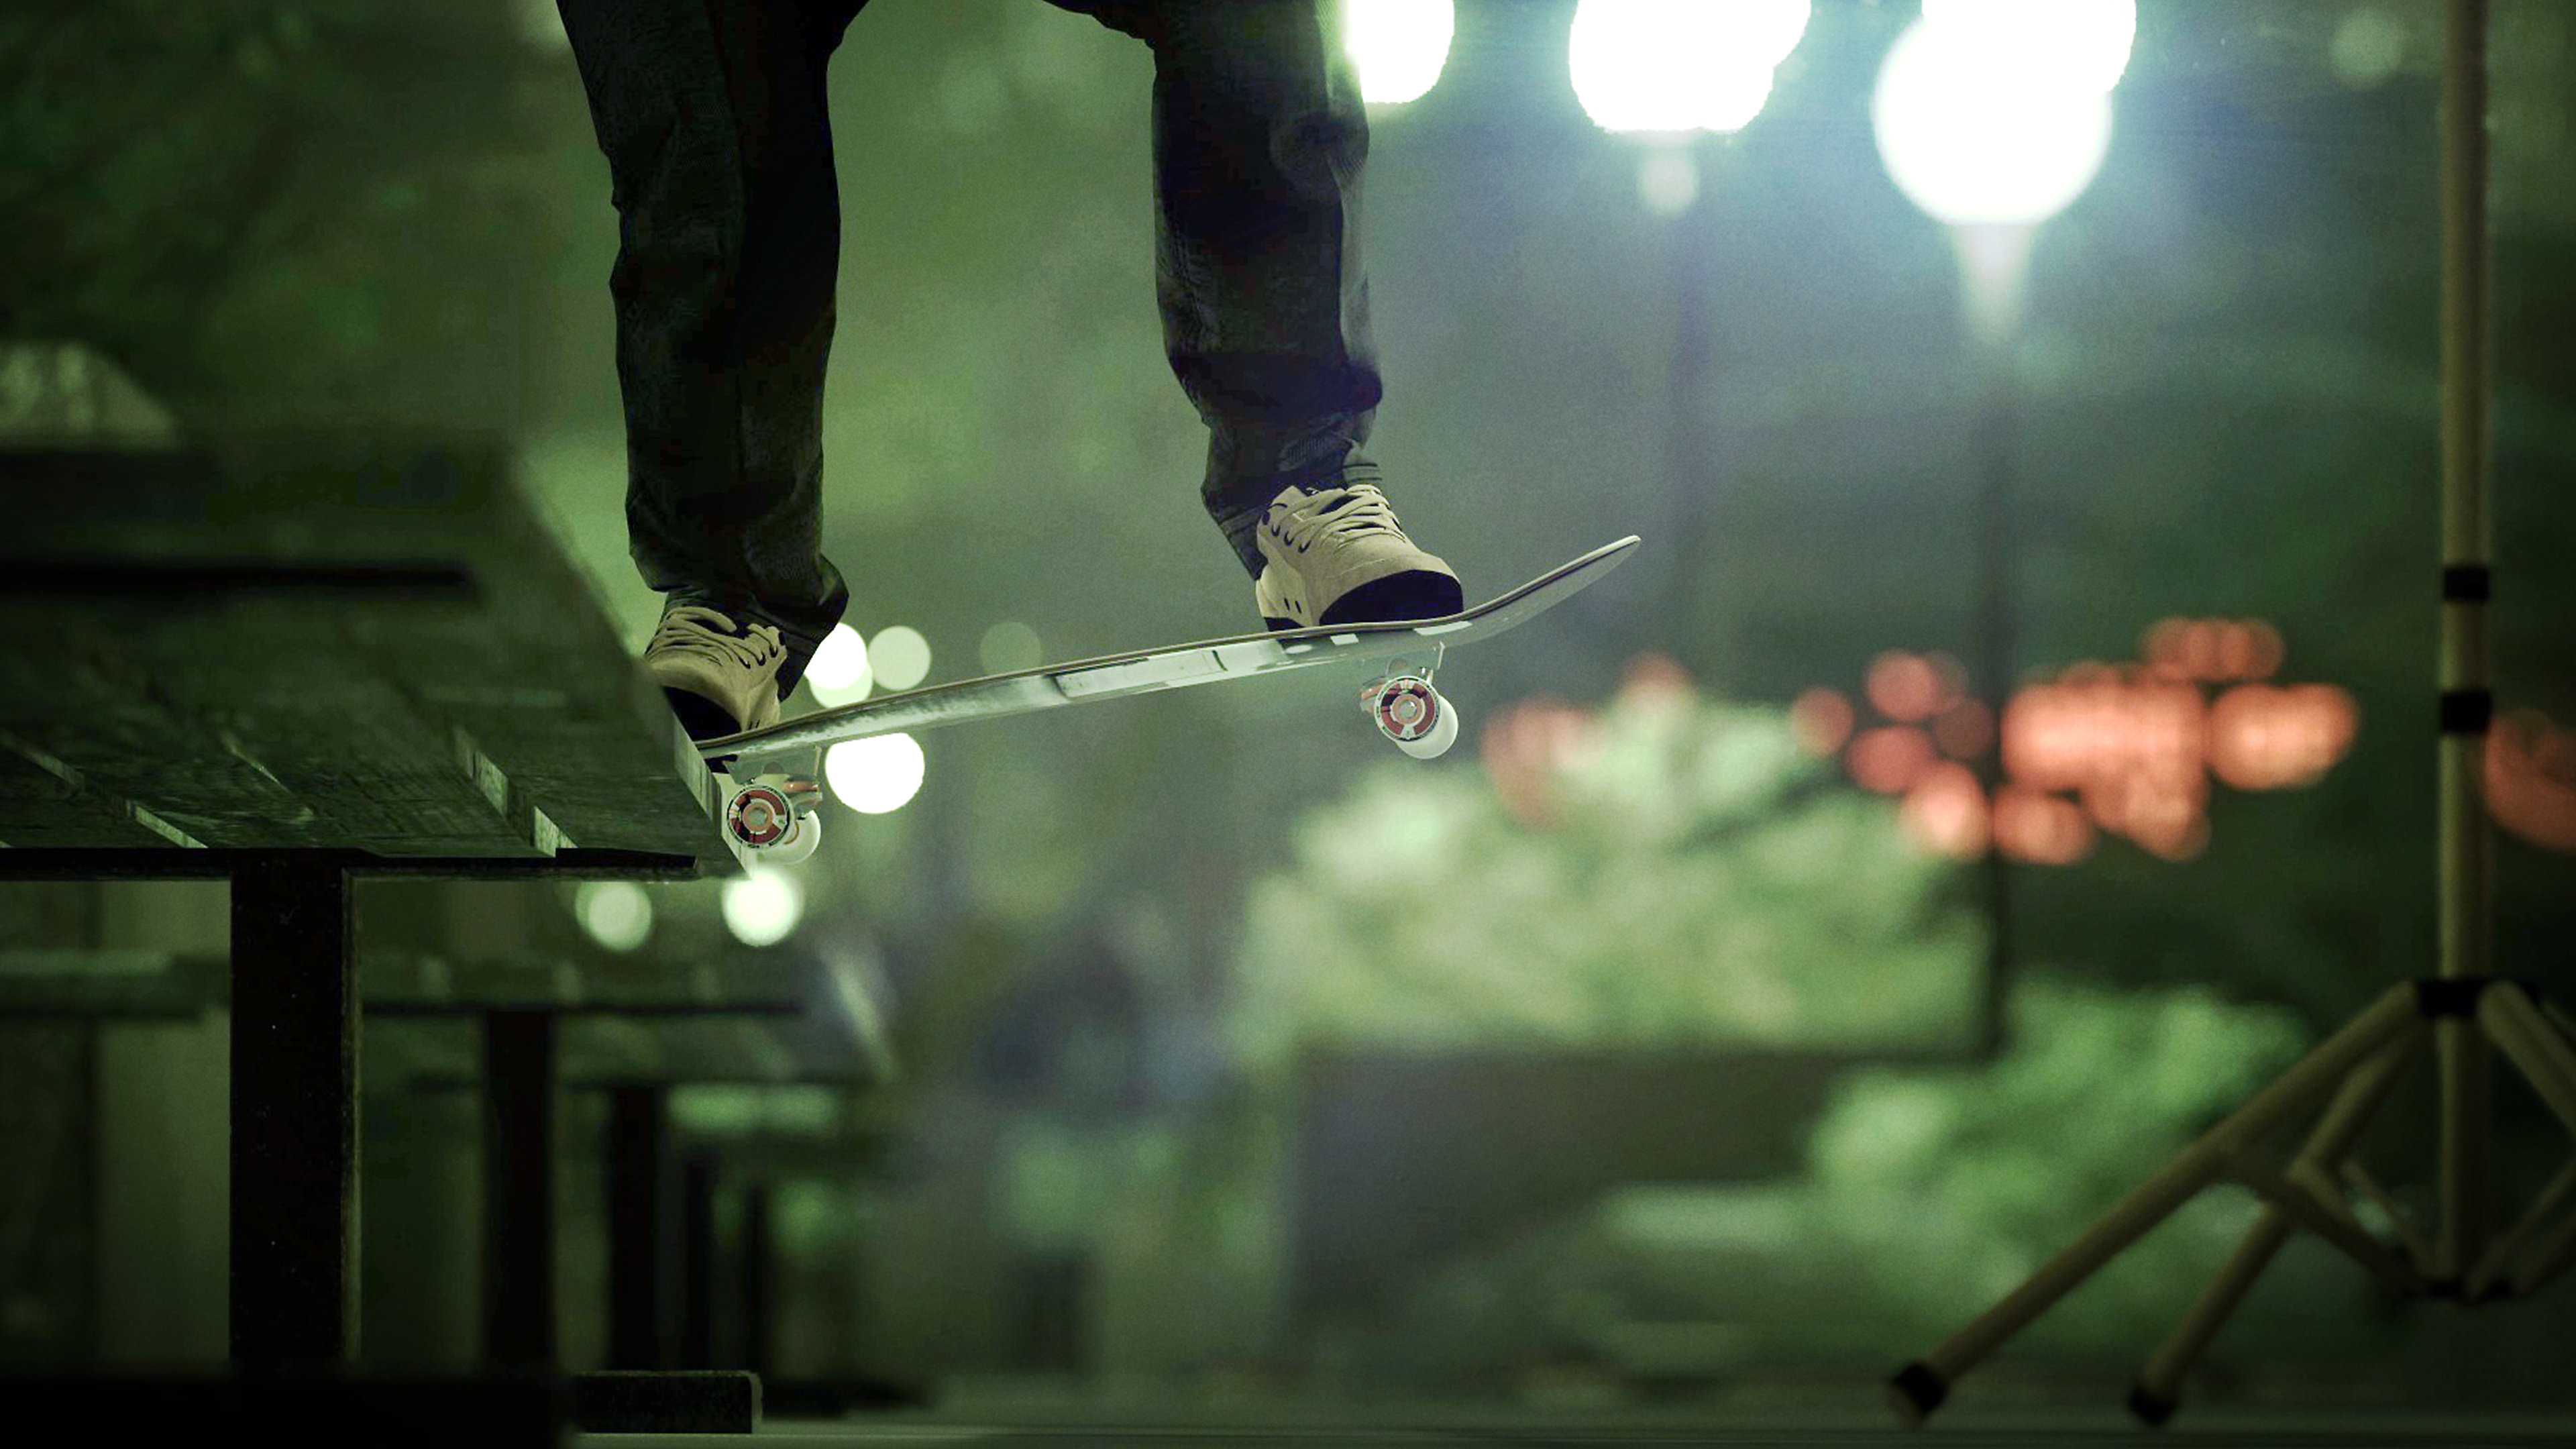 Session: Skate Sim – snímek obrazovky zobrazující skatera, který provádí grind na lavičce